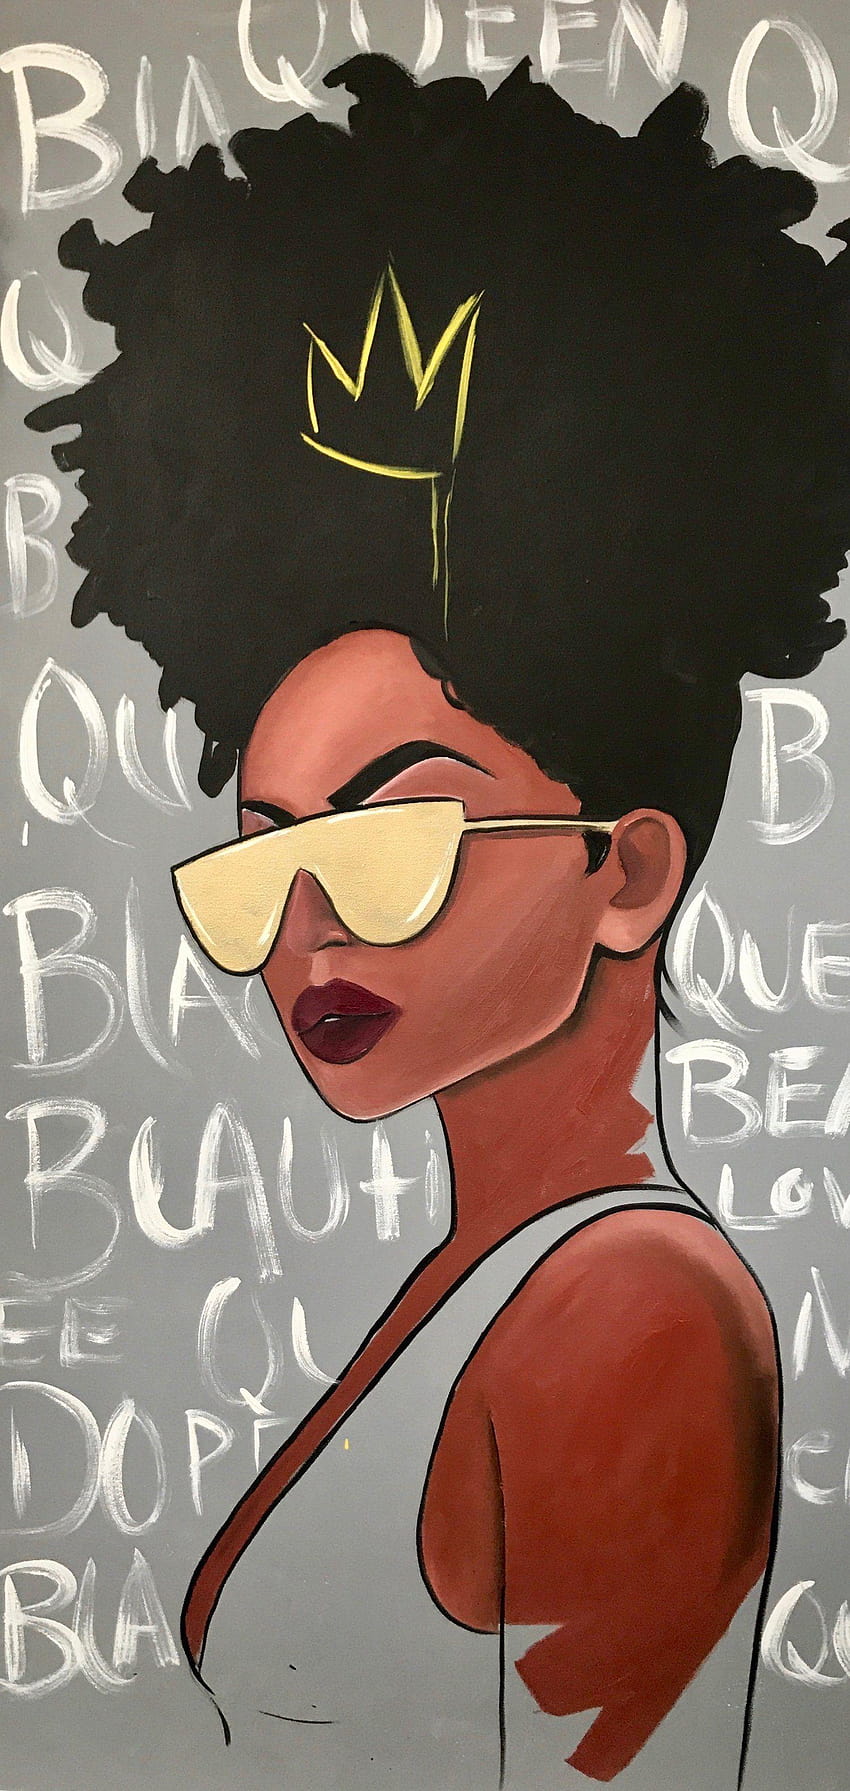 Black Girl Cartoon iPhone Wallpapers Top 25 Best Black Girl Cartoon iPhone  Wallpapers  Getty Wallpapers